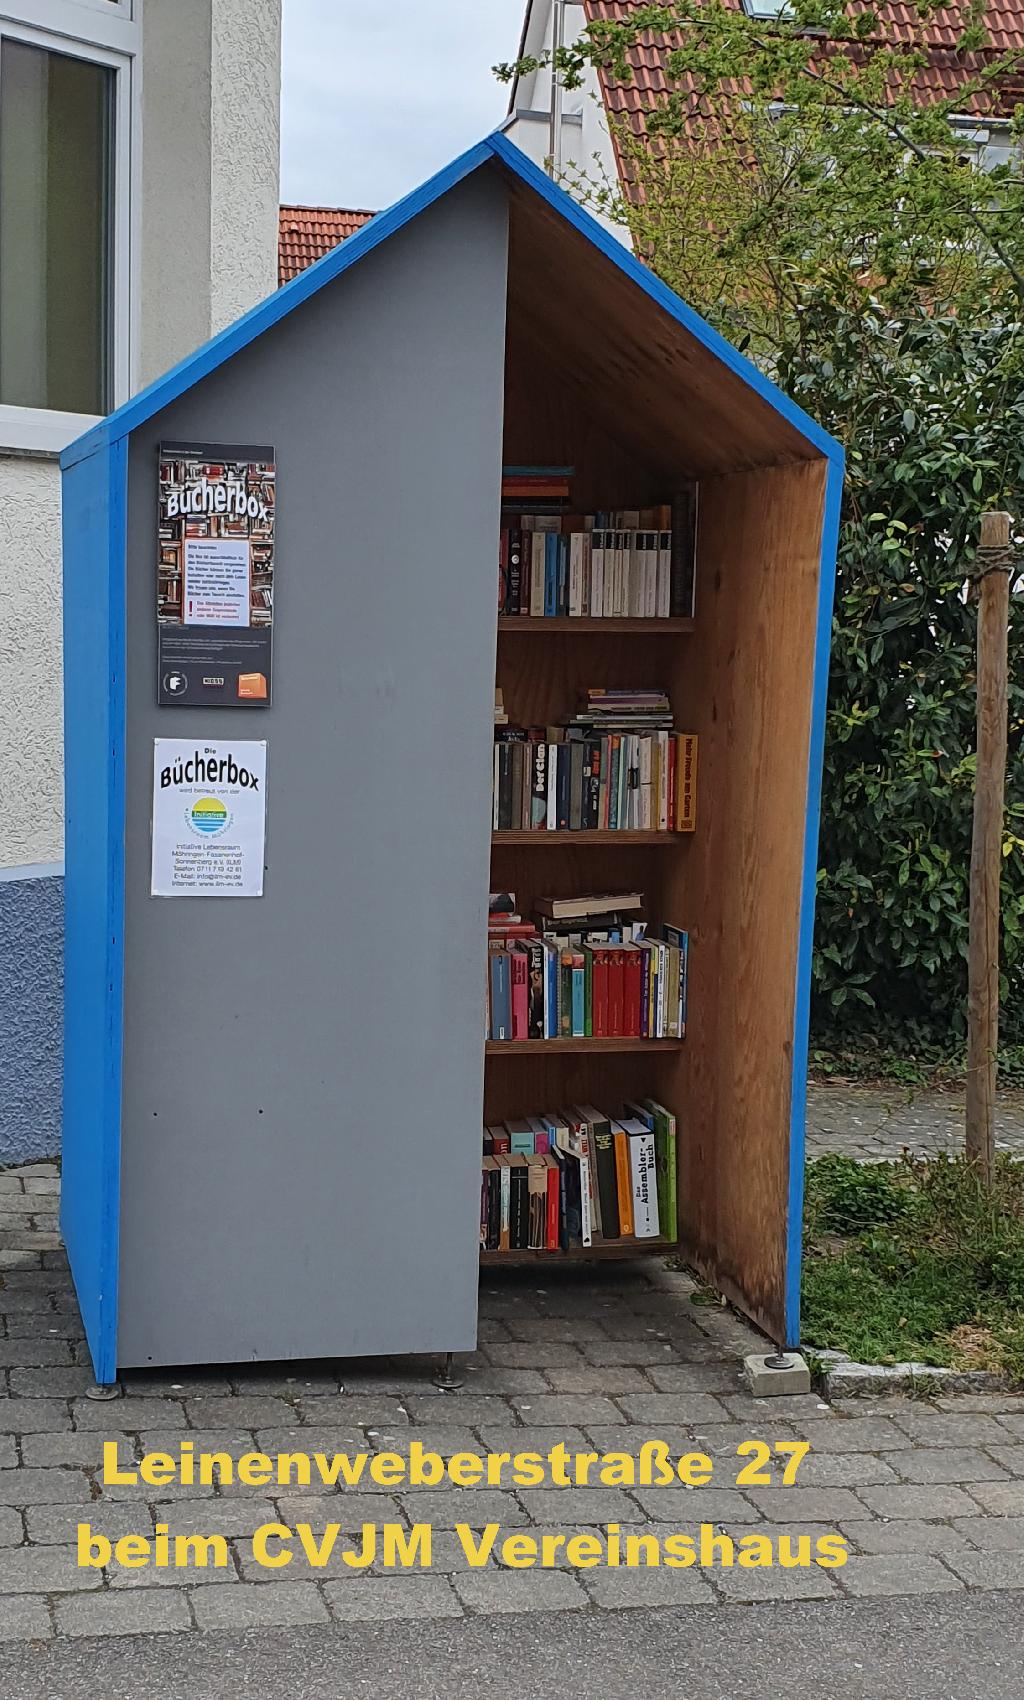 Bücherbox in Stuttgart